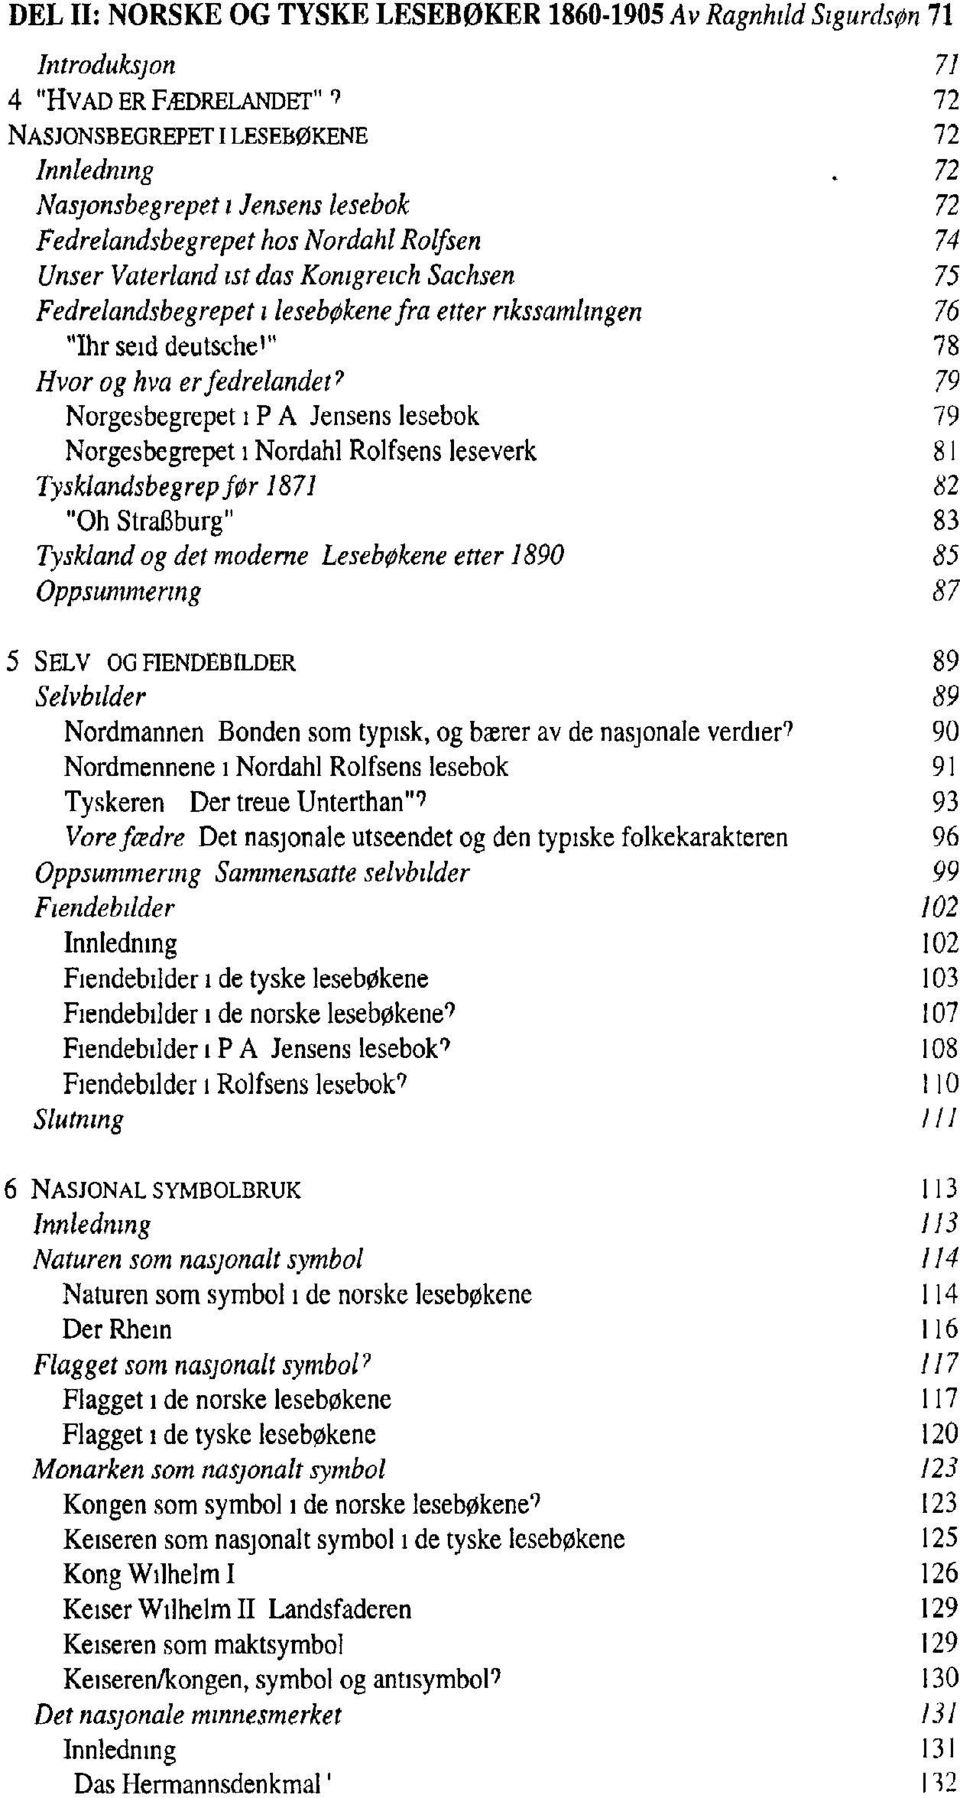 Ragnhild Sigurds0n og Hilde Kjolberg - PDF Free Download